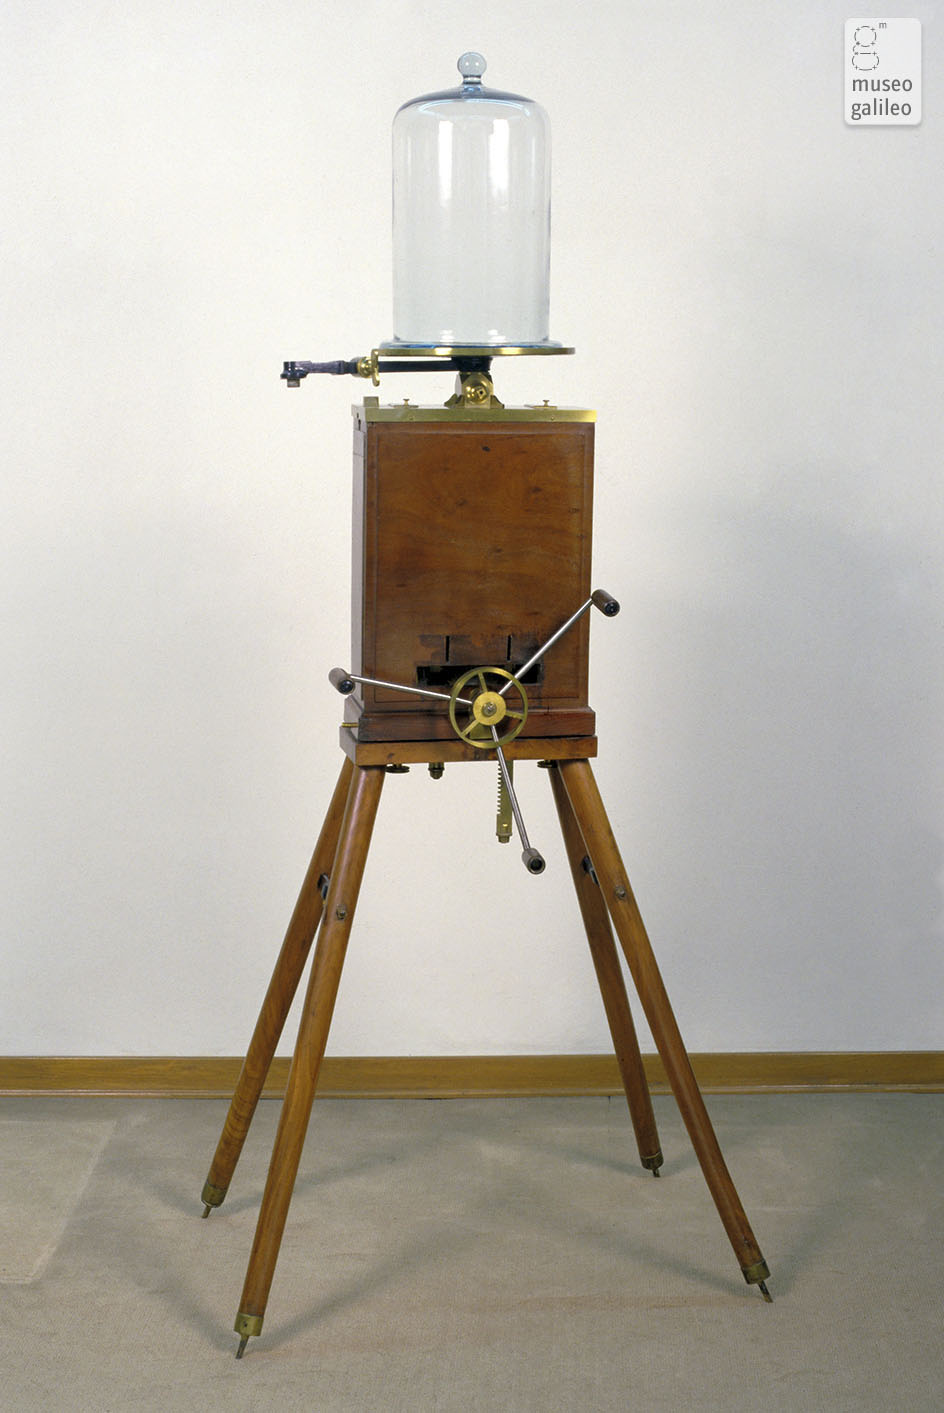 Pompa pneumatica tipo 's Gravesande (Inv. 1532)